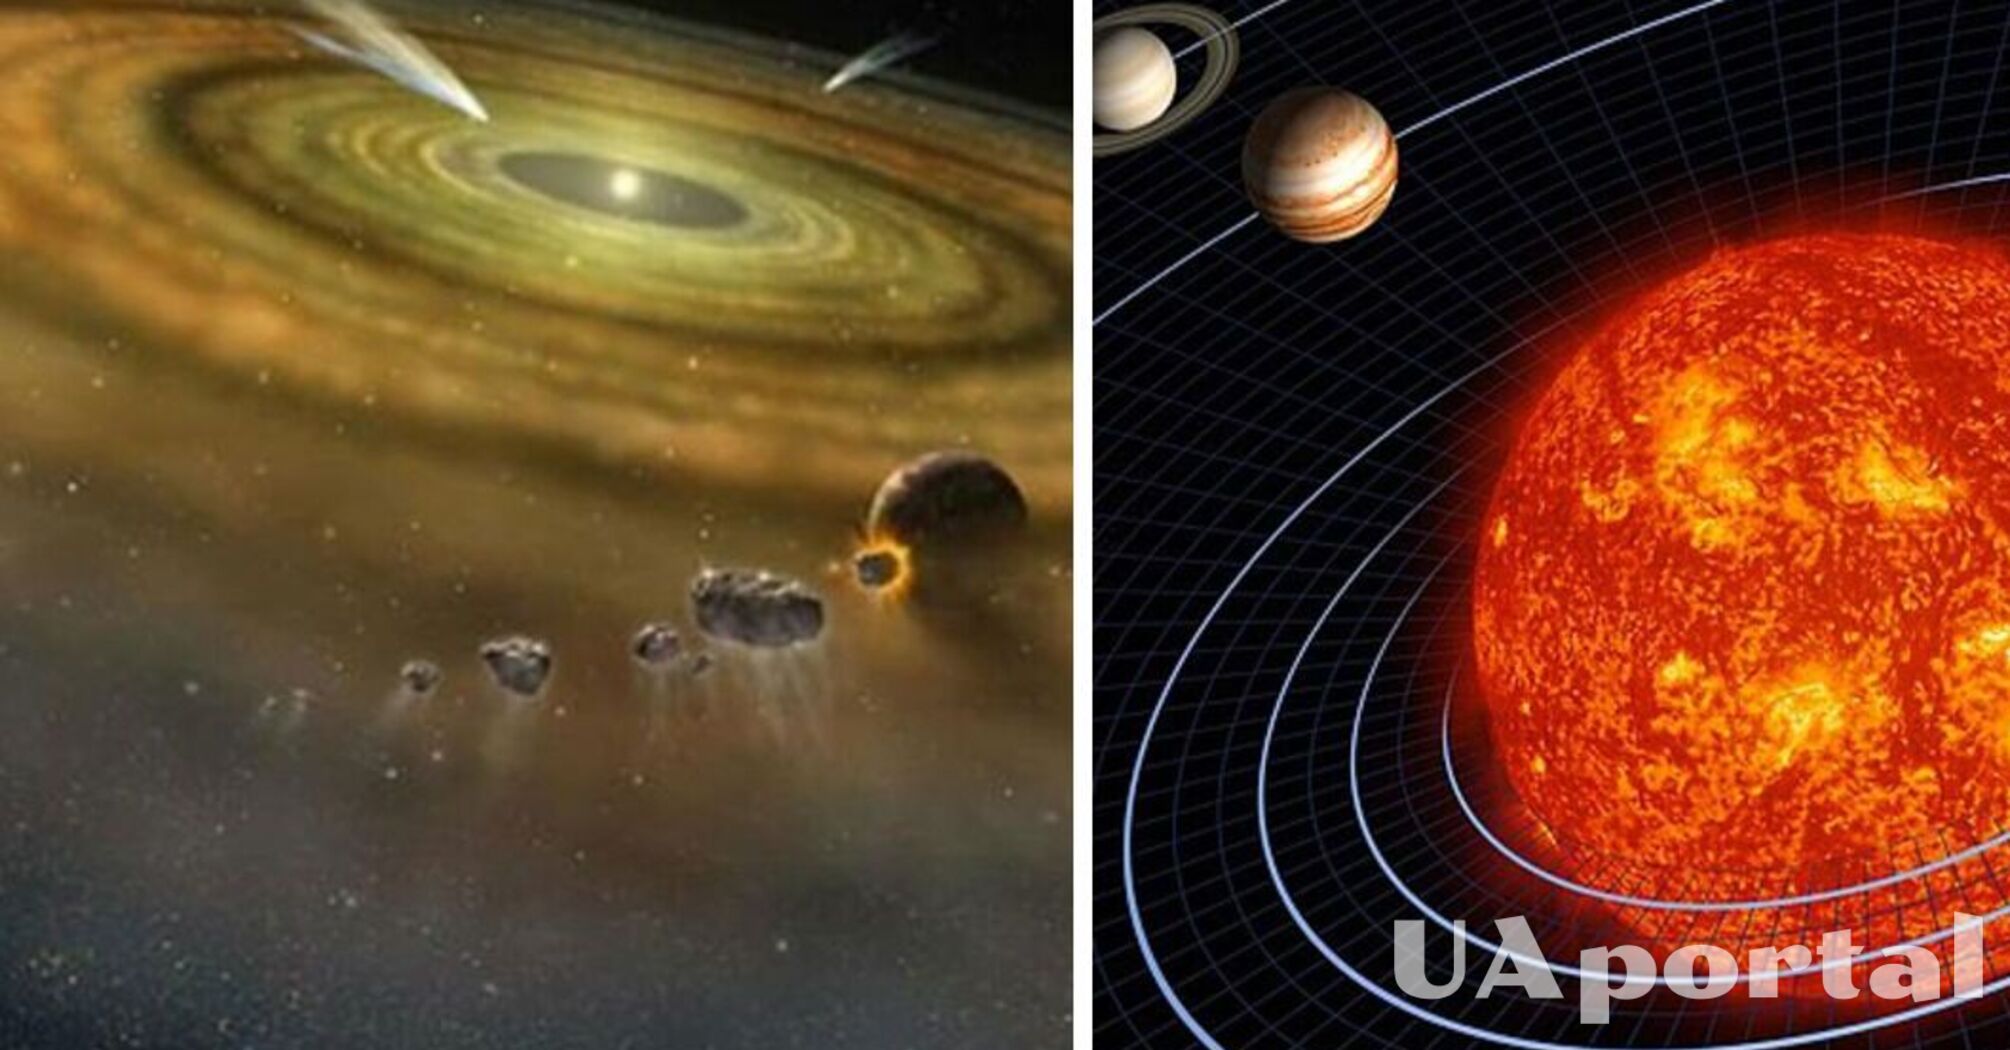 Ученые исследовали происхождение материи, из которой создана наша Солнечная система